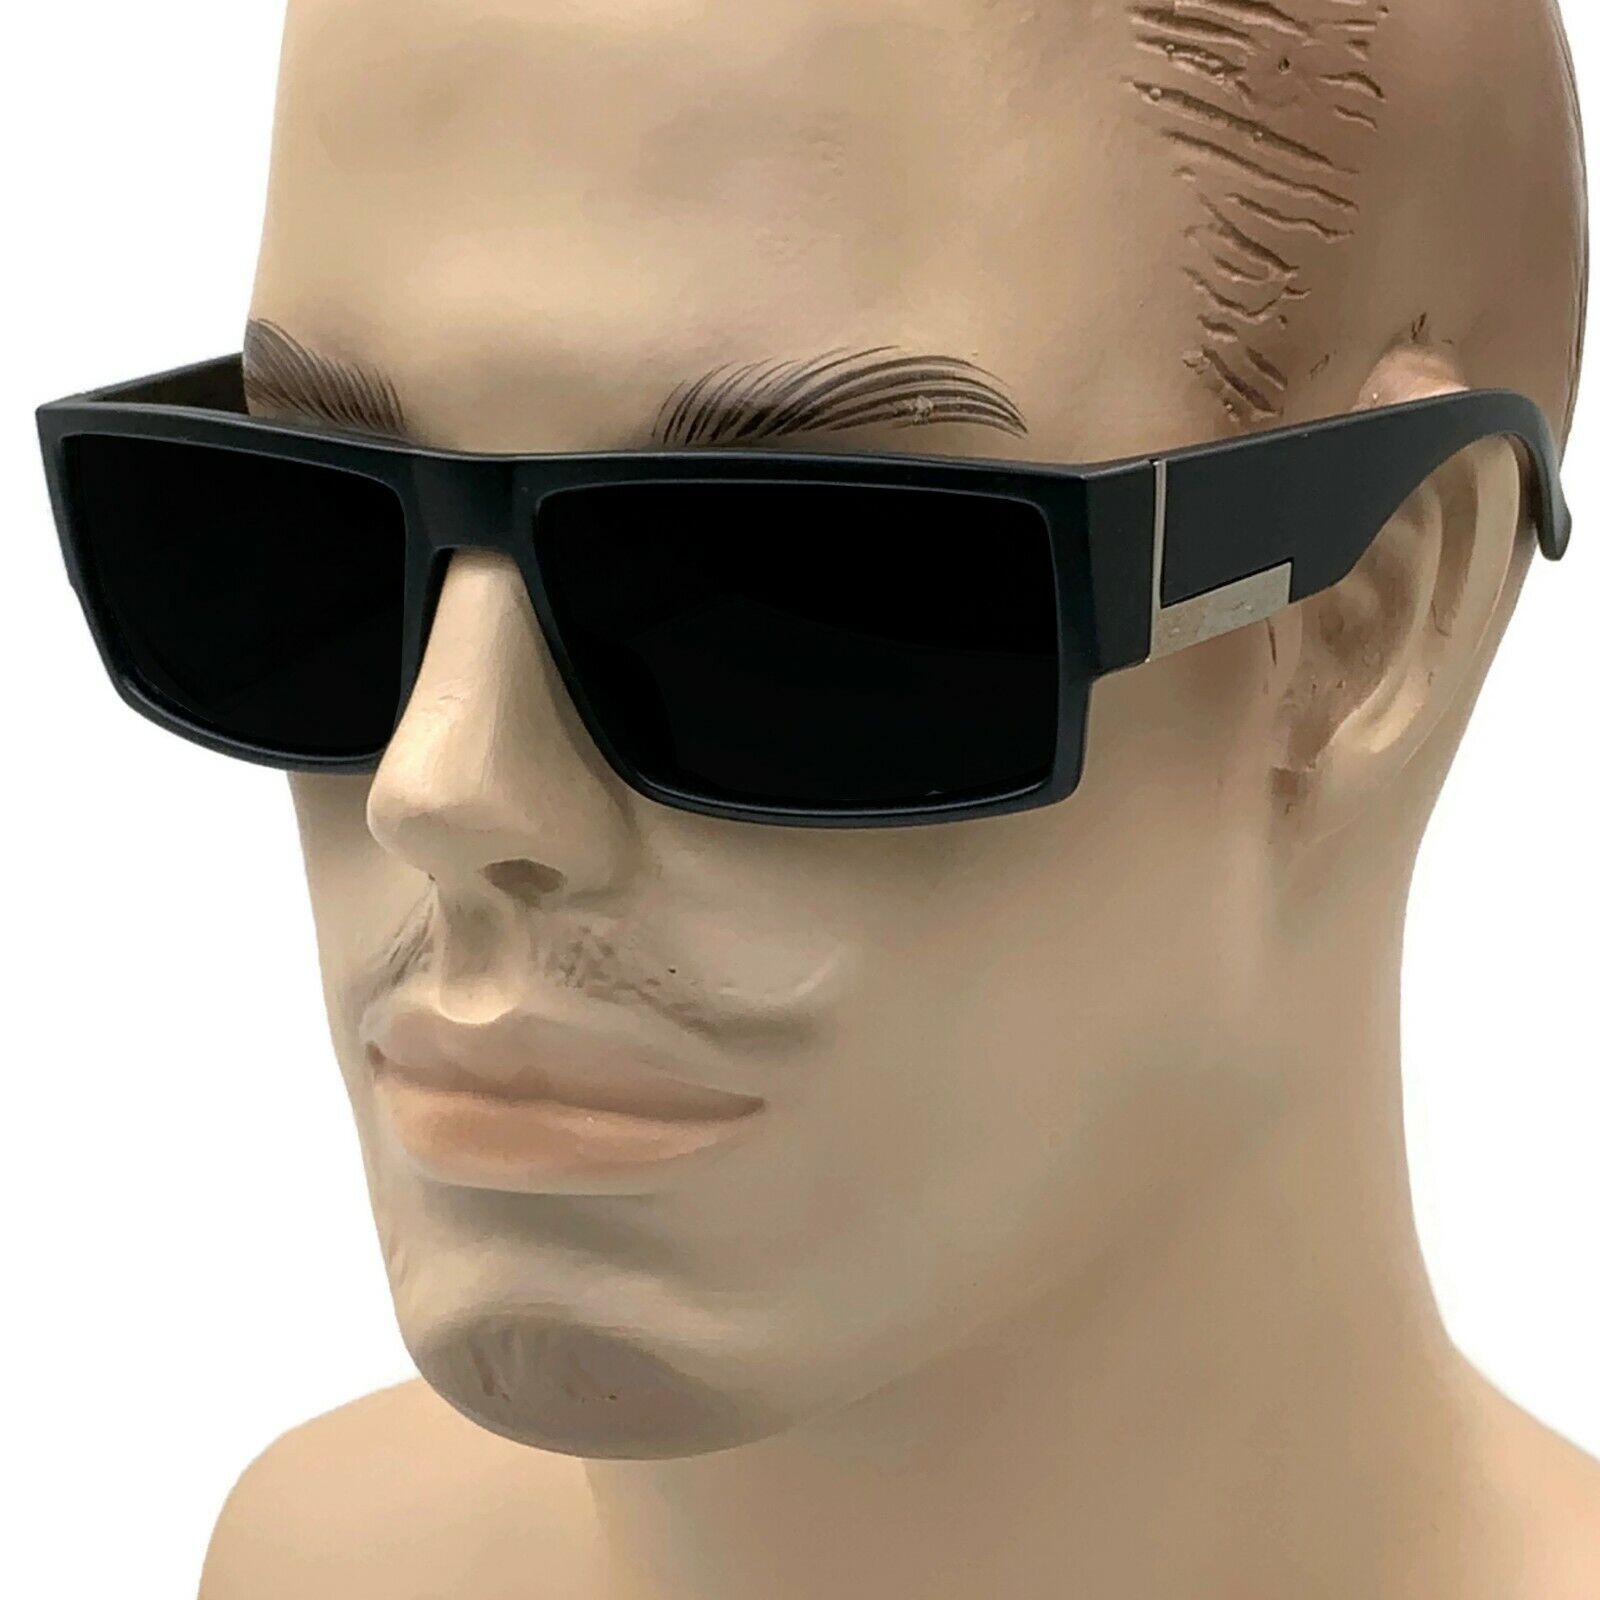 OG Cholo Super Dark Lens Black Sunglasses Gangster Large Square